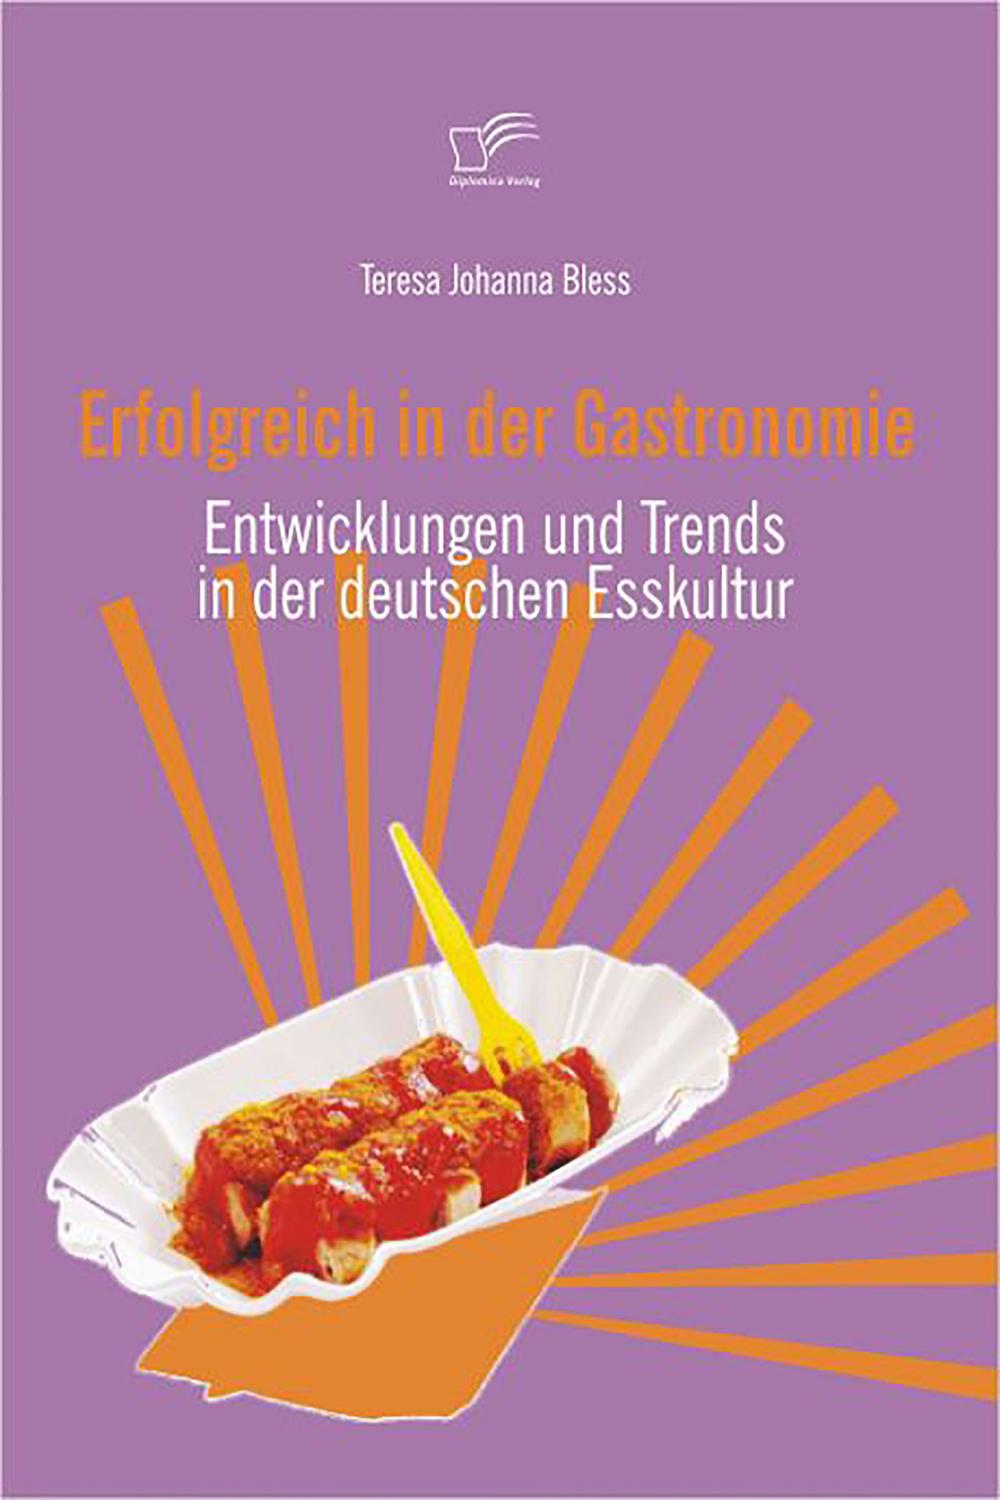 Erfolgreich in der Gastronomie - Teresa Johanna Bless,,